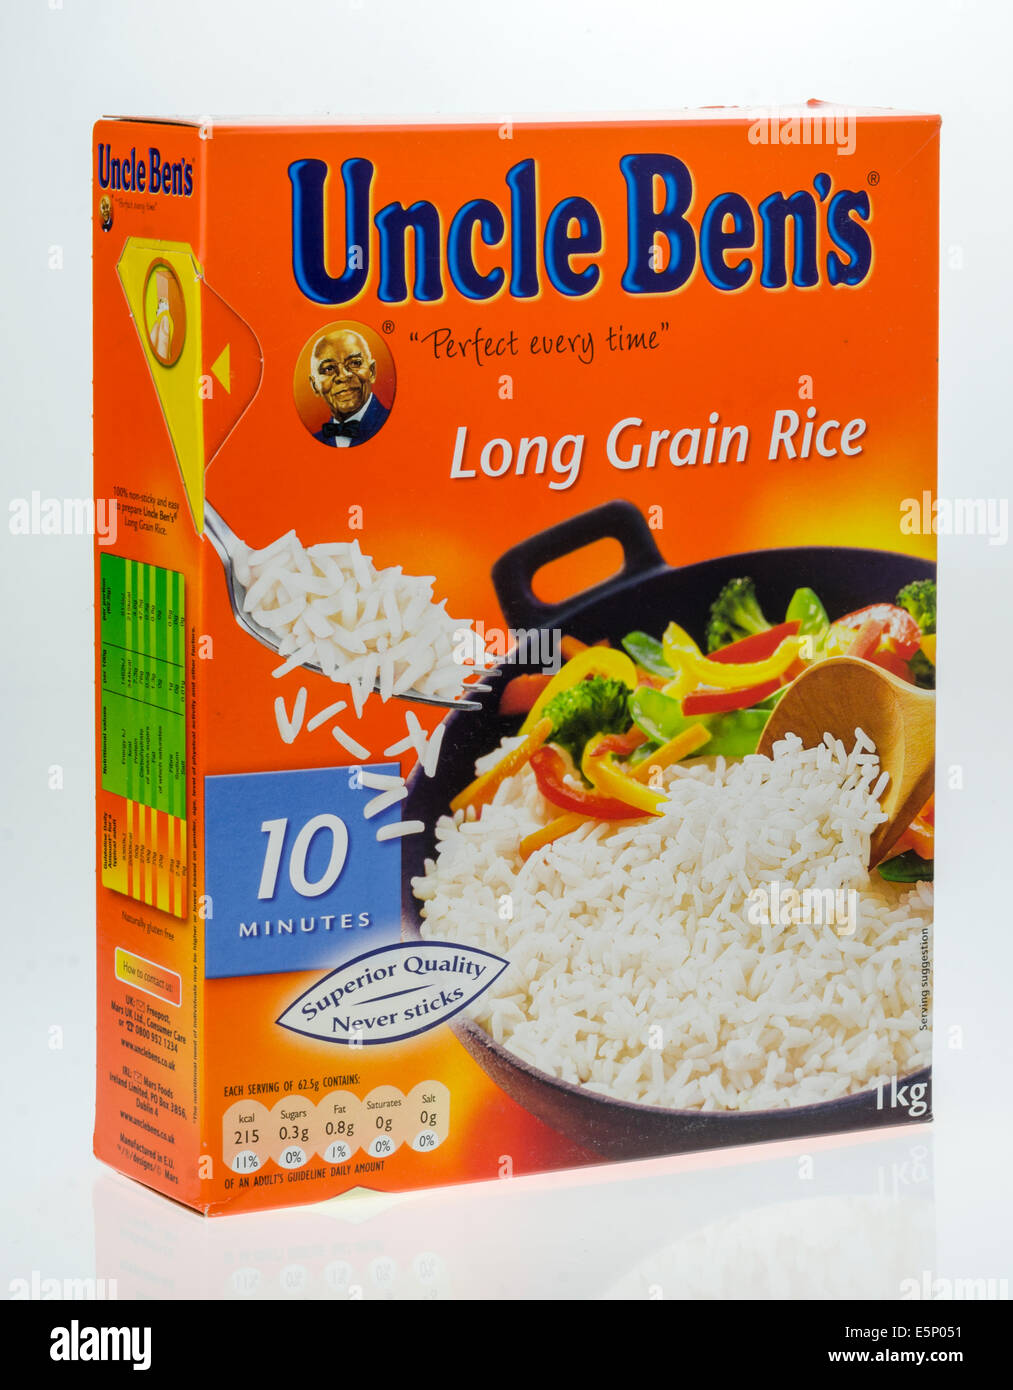 Uncle Ben's Riz à grains longs, 5,4 kg : : Épicerie et